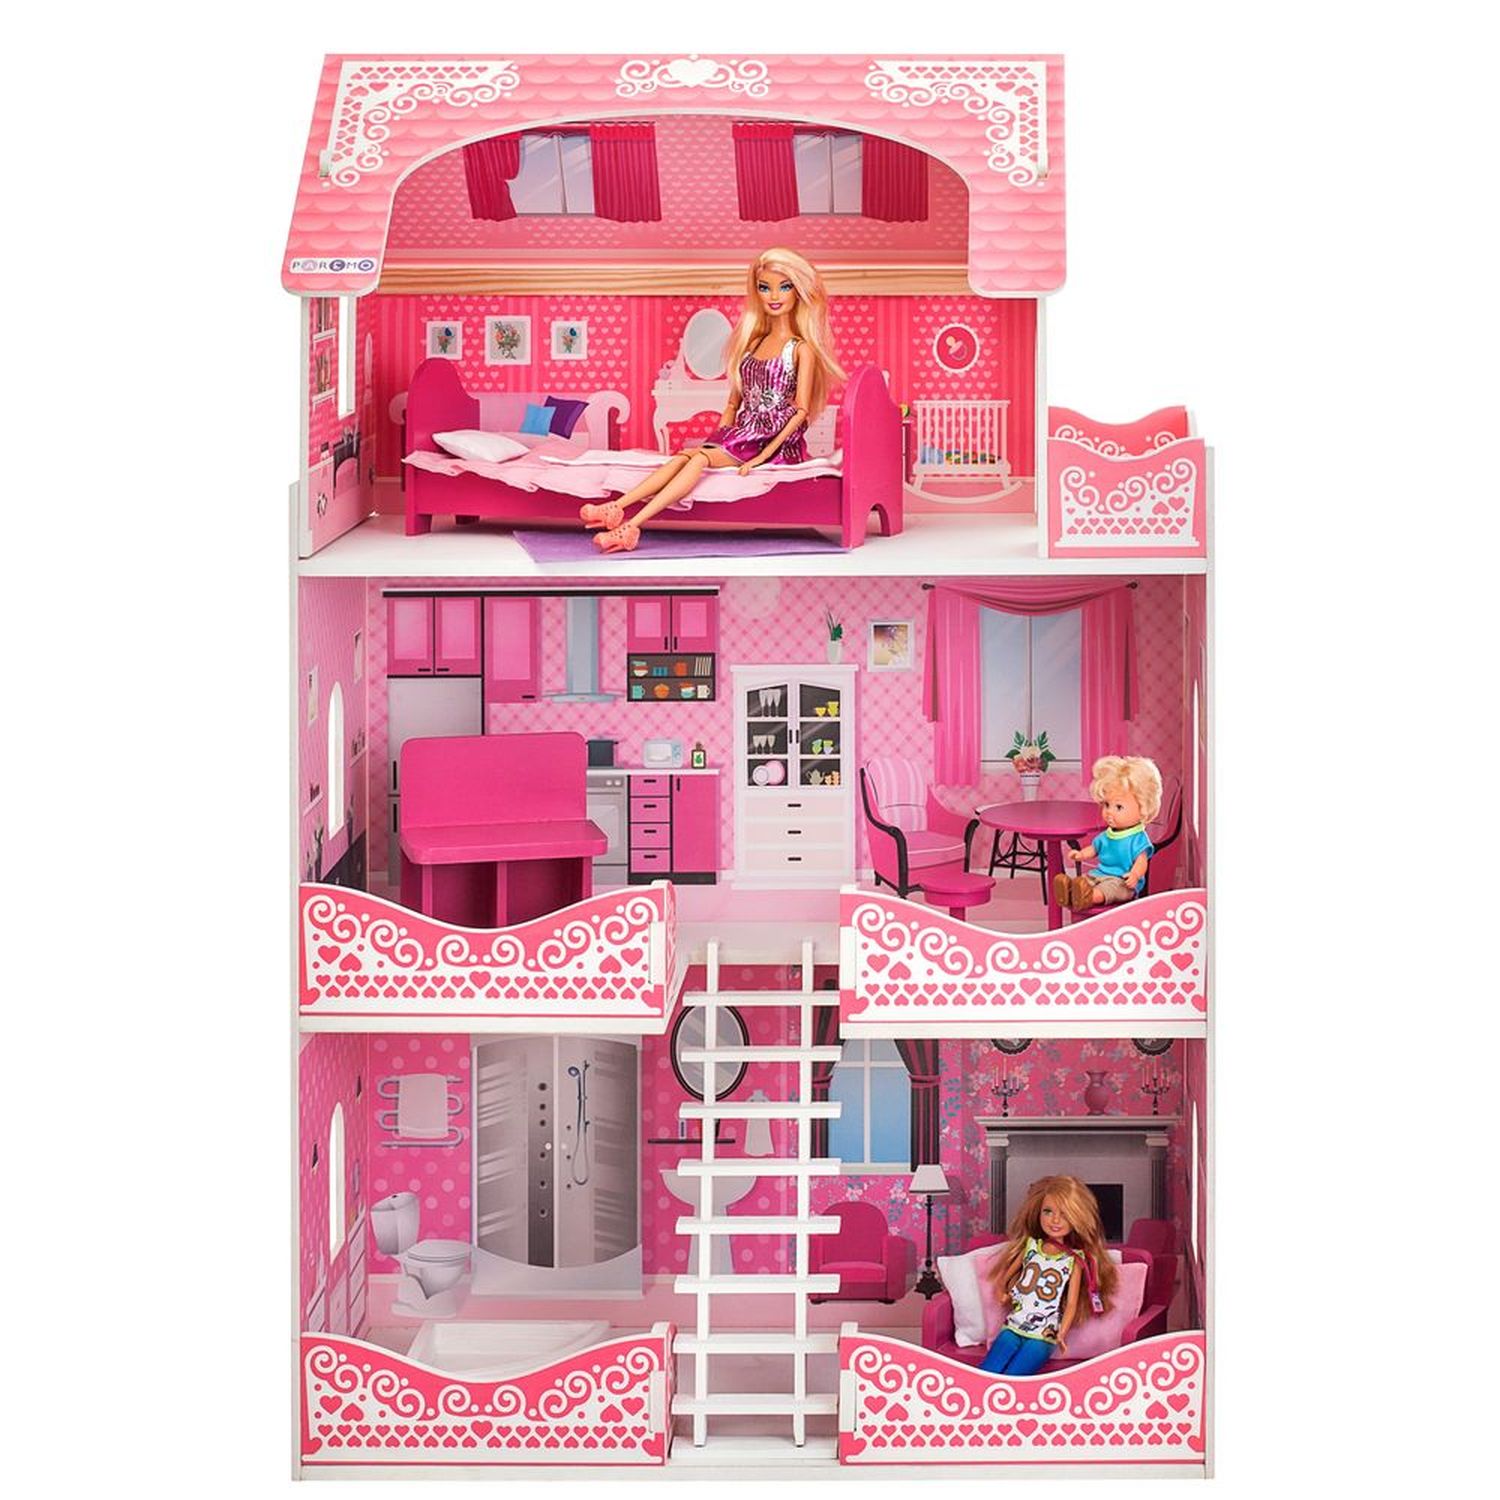 Кукольный домик Розет Шери, для кукол до 30 см 7 предметов мебели и интерьера